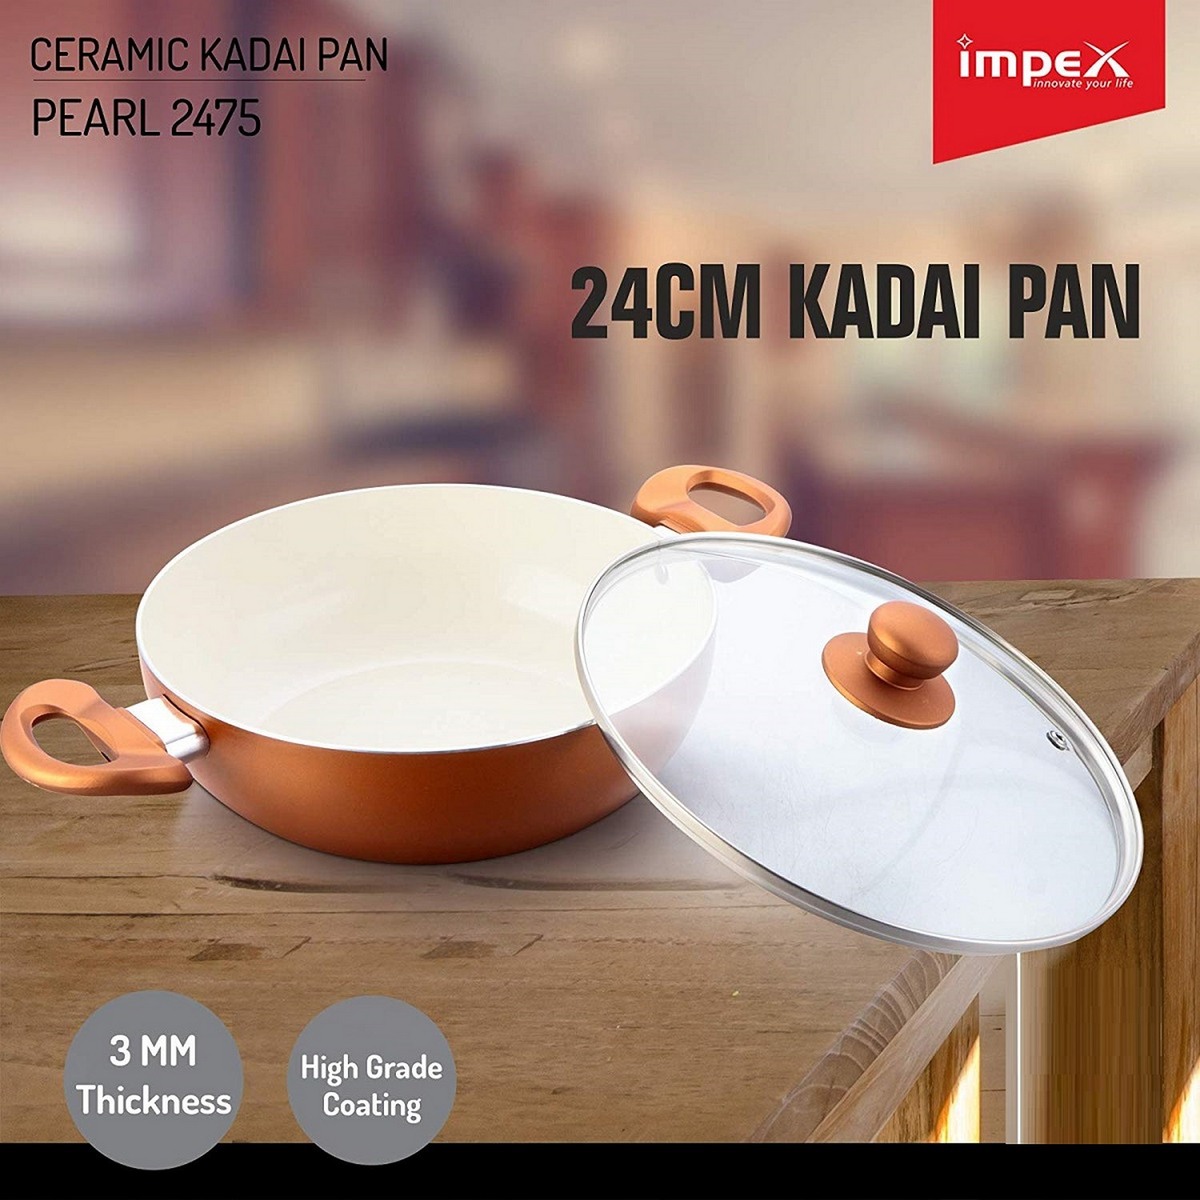 Impex Ceramic Kadai Pan Pearl 2475 24cm